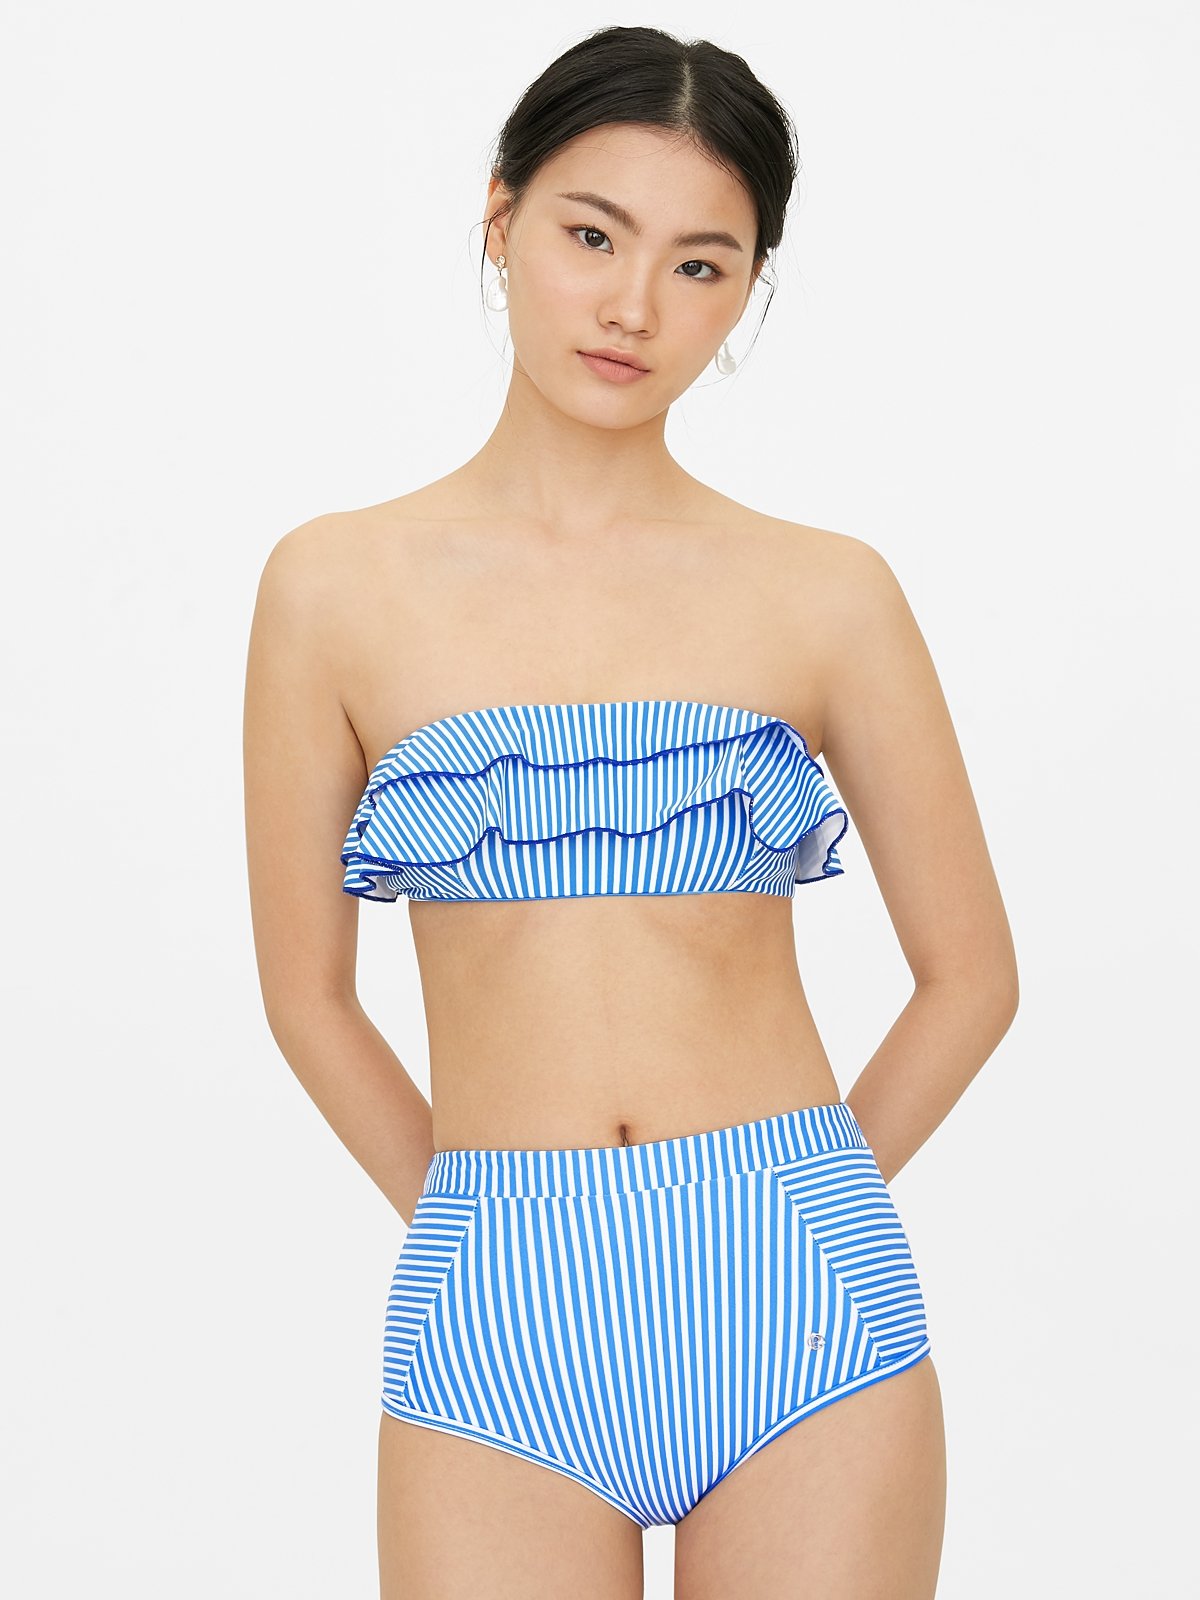 Gevoelig voor selecteer geeuwen Ruffle Stripe Strapless Bikini Top - Blue - Pomelo Fashion